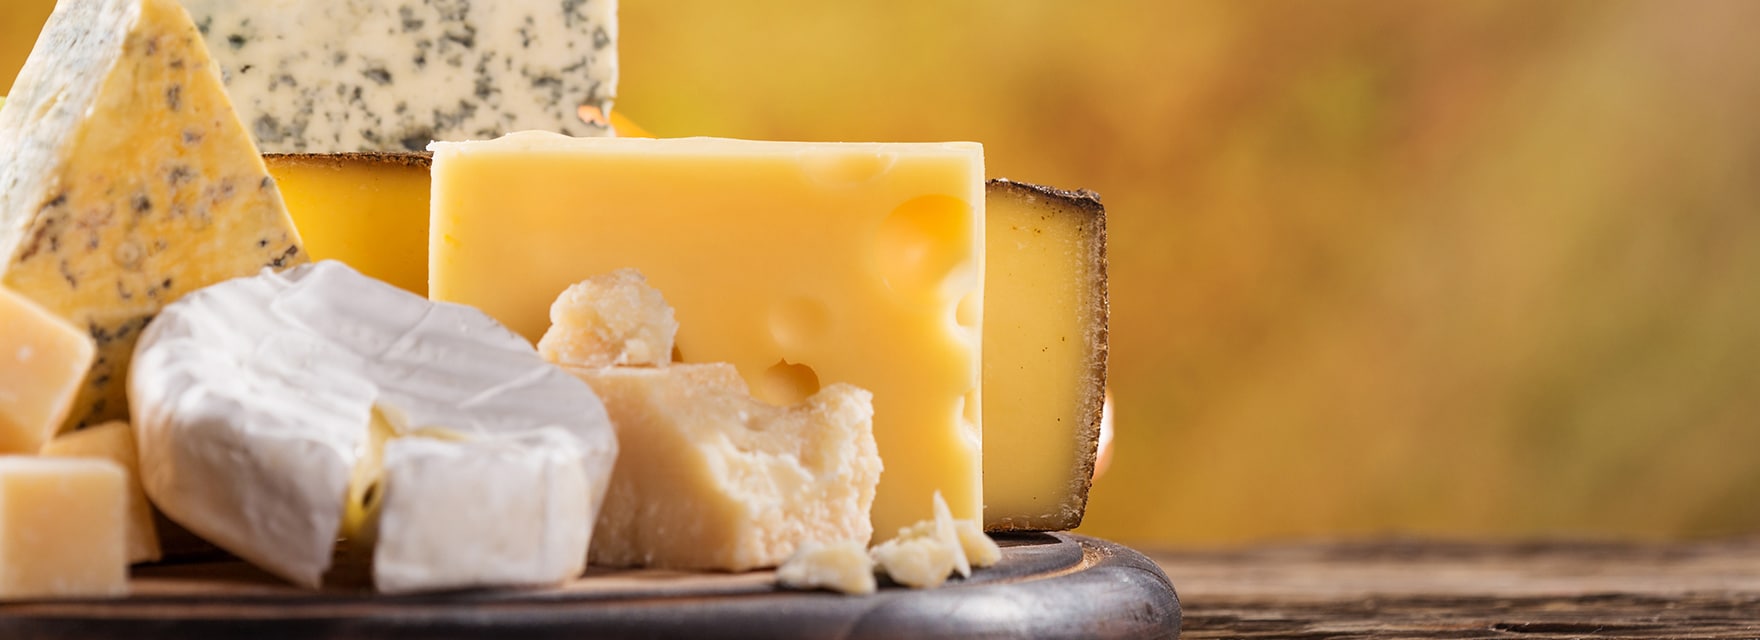 O que contém o queijo fundido ERU?